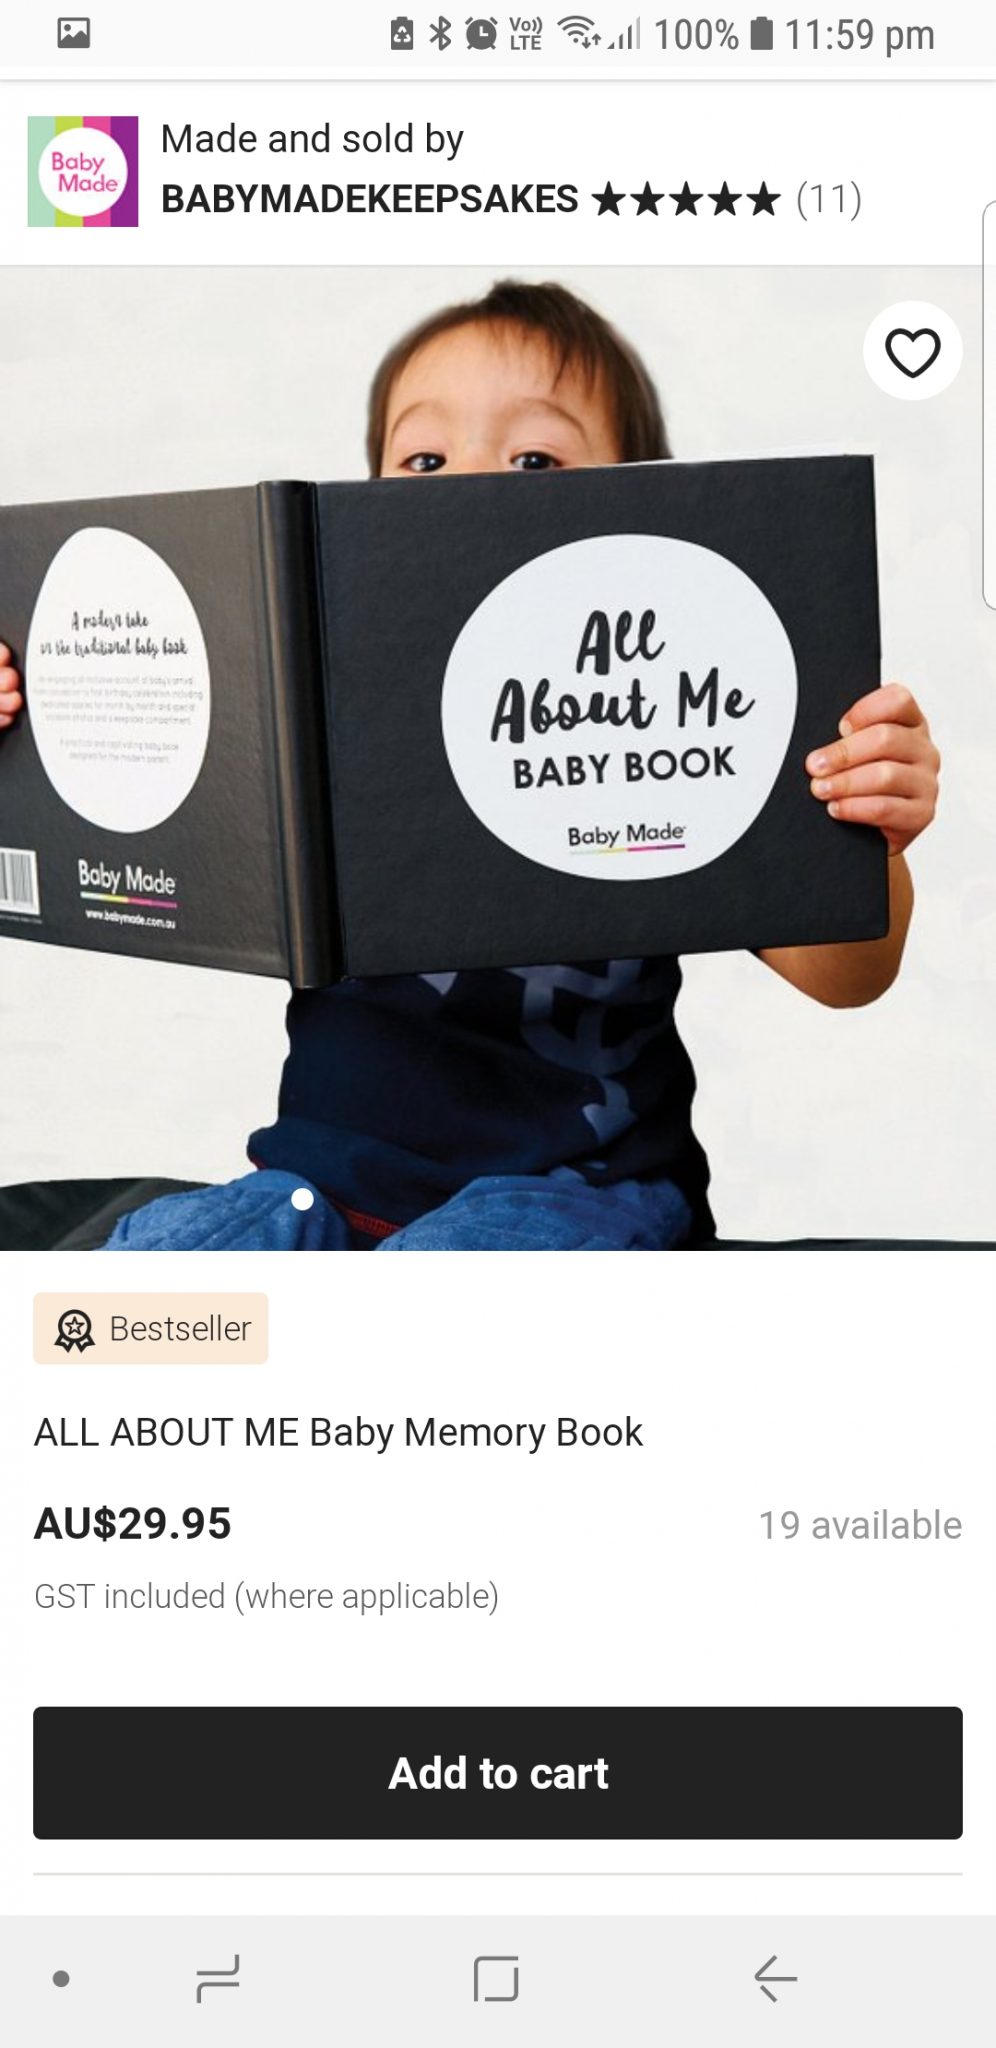 Baby memory book